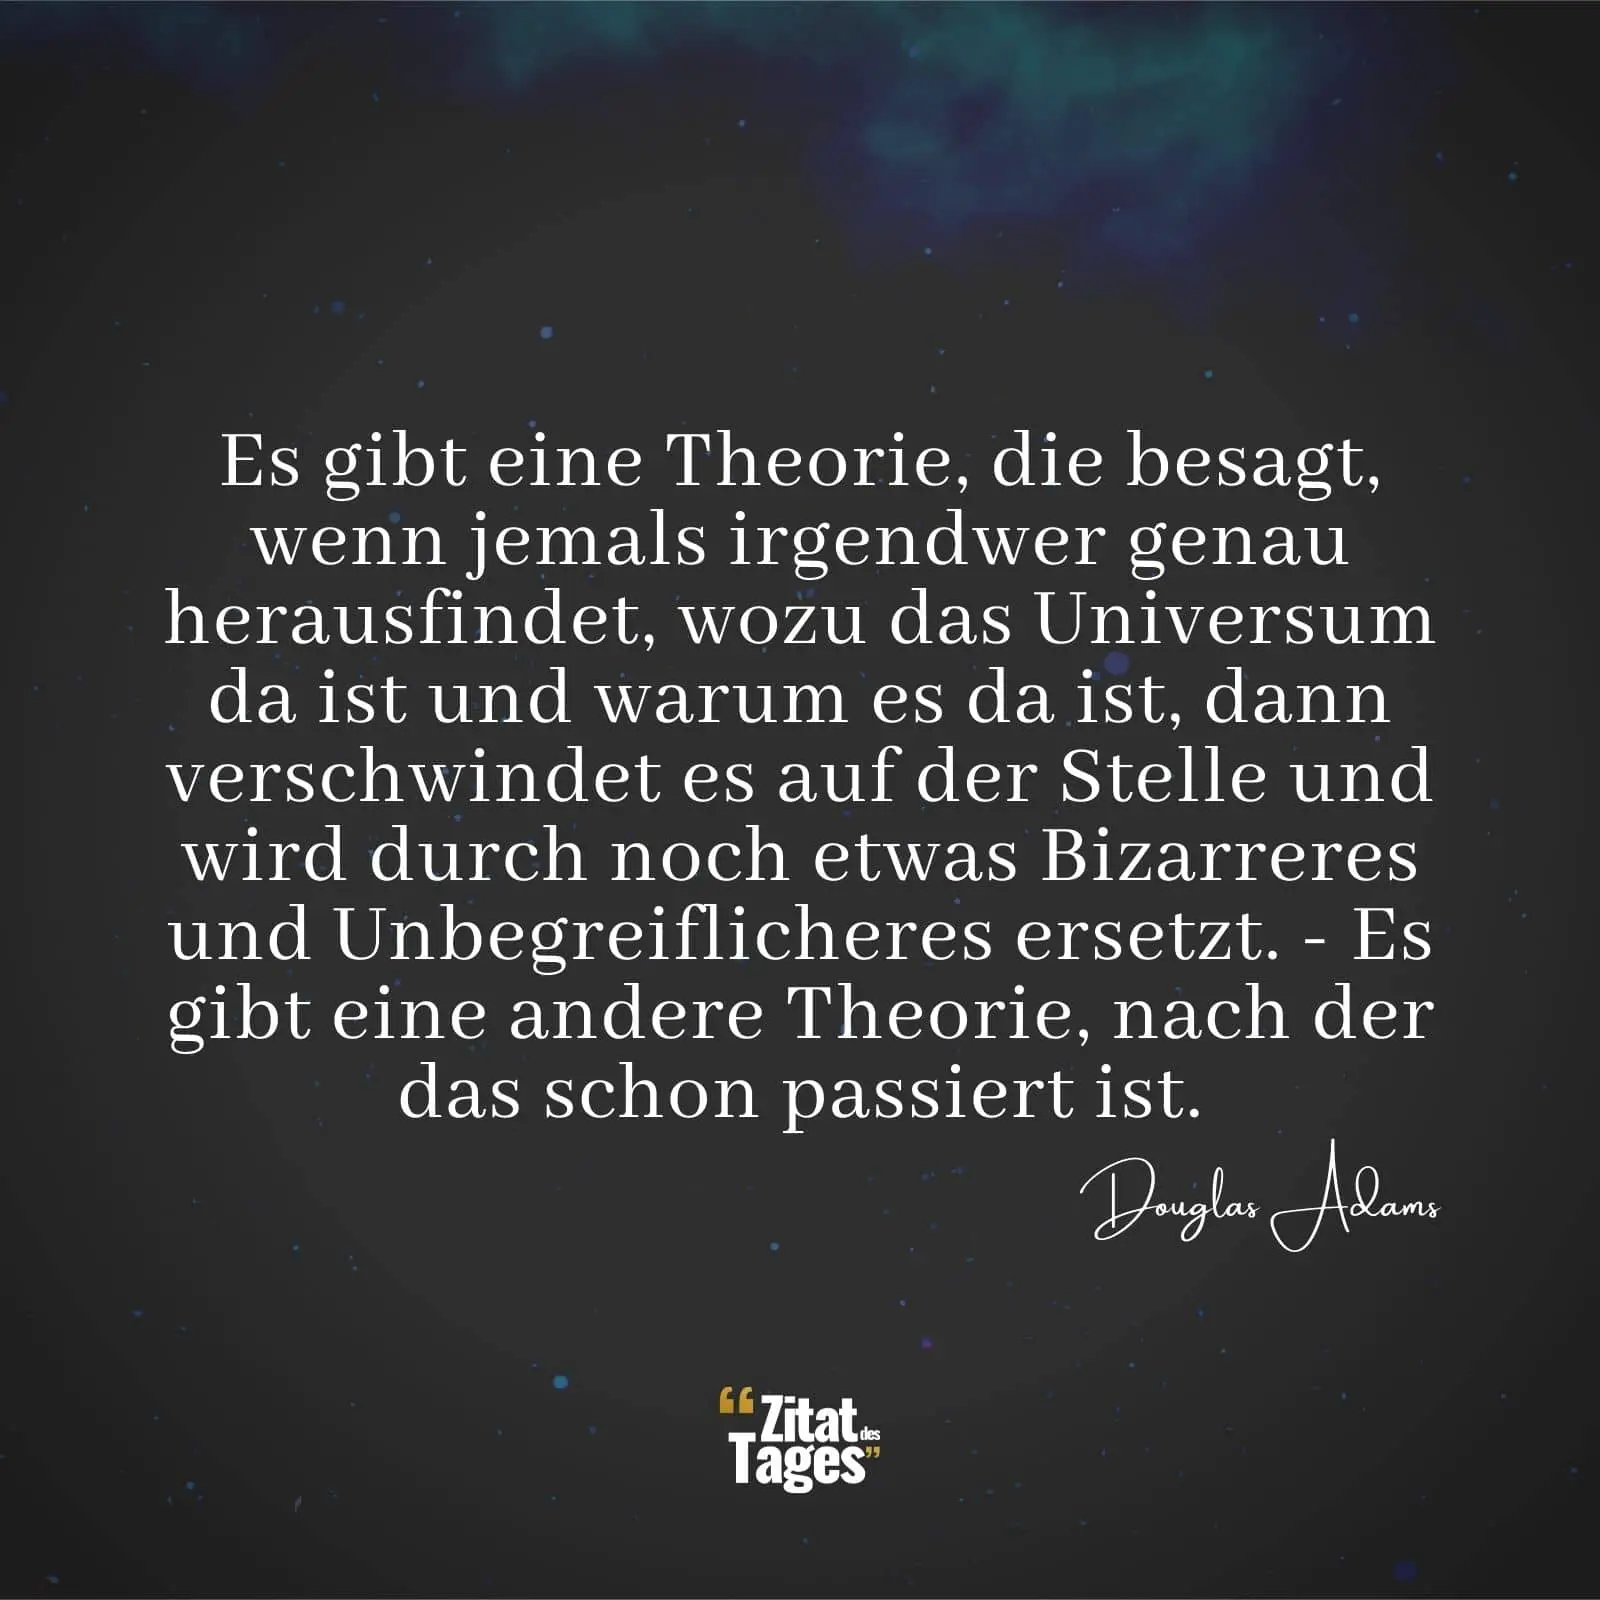 Es gibt eine Theorie, die besagt, wenn jemals irgendwer genau herausfindet, wozu das Universum da ist und warum es da ist, dann verschwindet es auf der Stelle und wird durch noch etwas Bizarreres und Unbegreiflicheres ersetzt. - Es gibt eine andere Theorie, nach der das schon passiert ist. - Douglas Adams